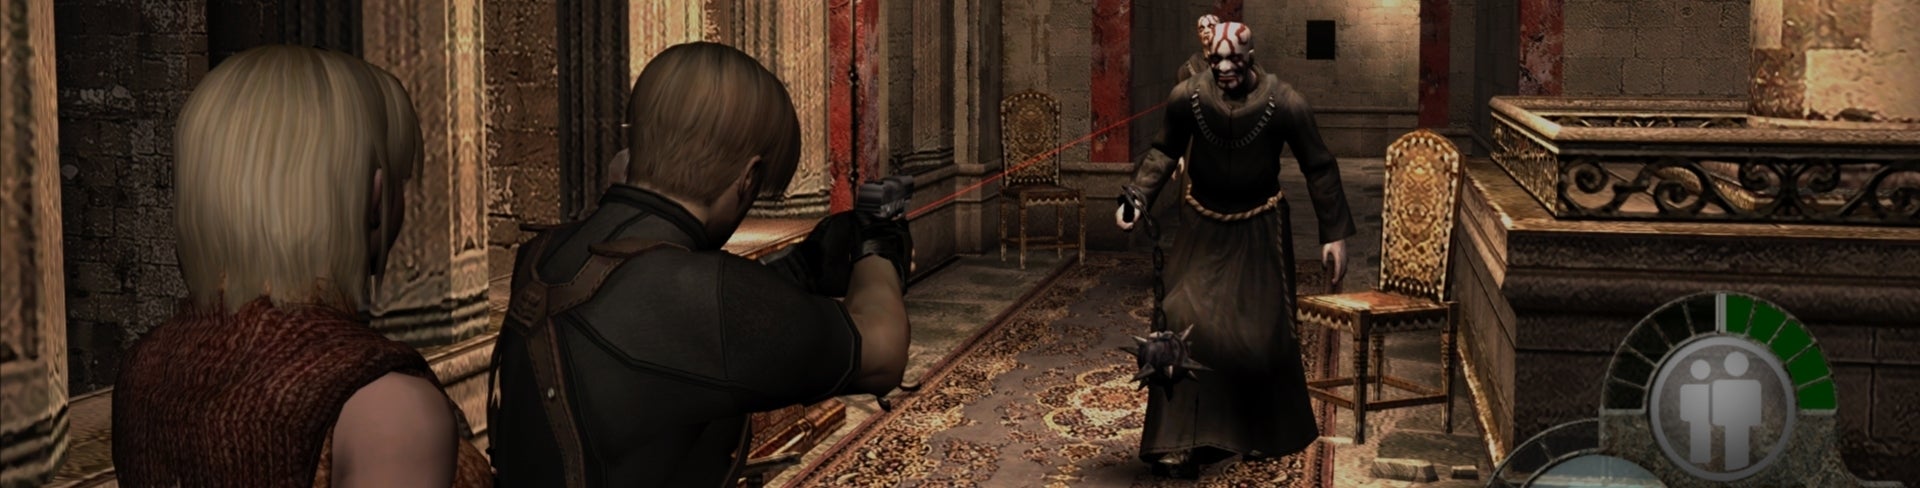 Afbeeldingen van Resident Evil 4 Ultimate HD Edition aangekondigd voor pc